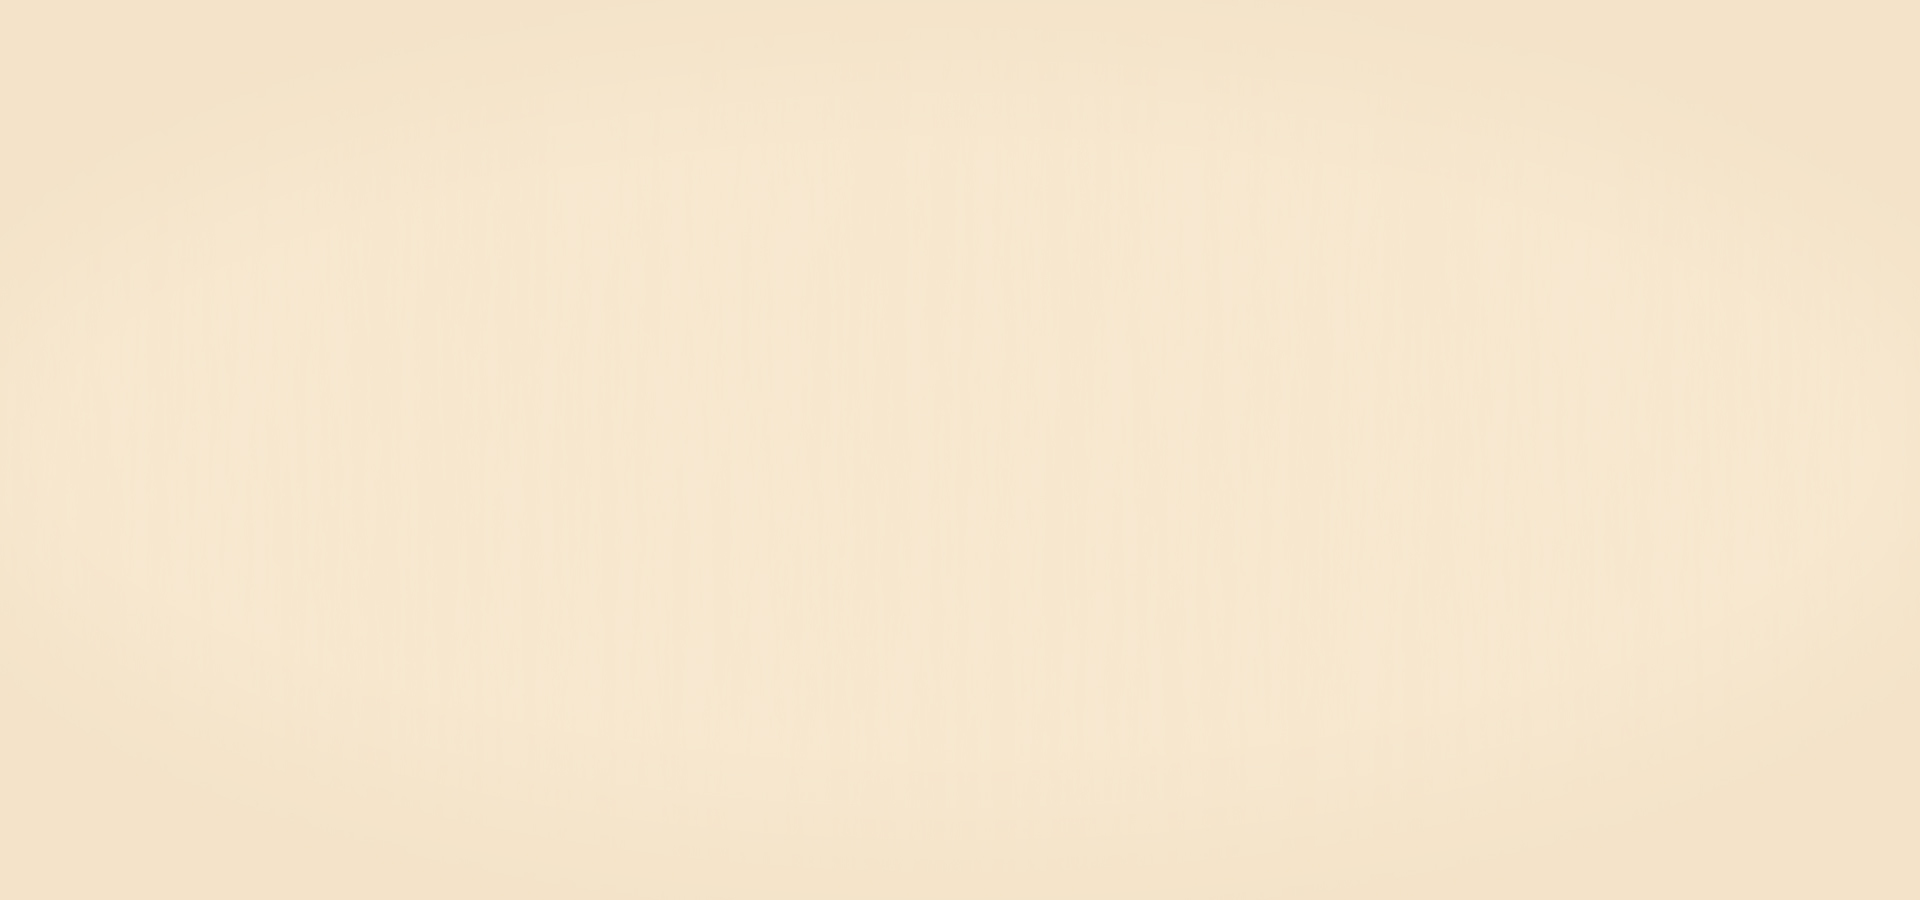 【米黄肌理漆贴图库】-JPG米黄肌理漆贴图下载-ID698865-免费贴图库 - 青模网贴图库